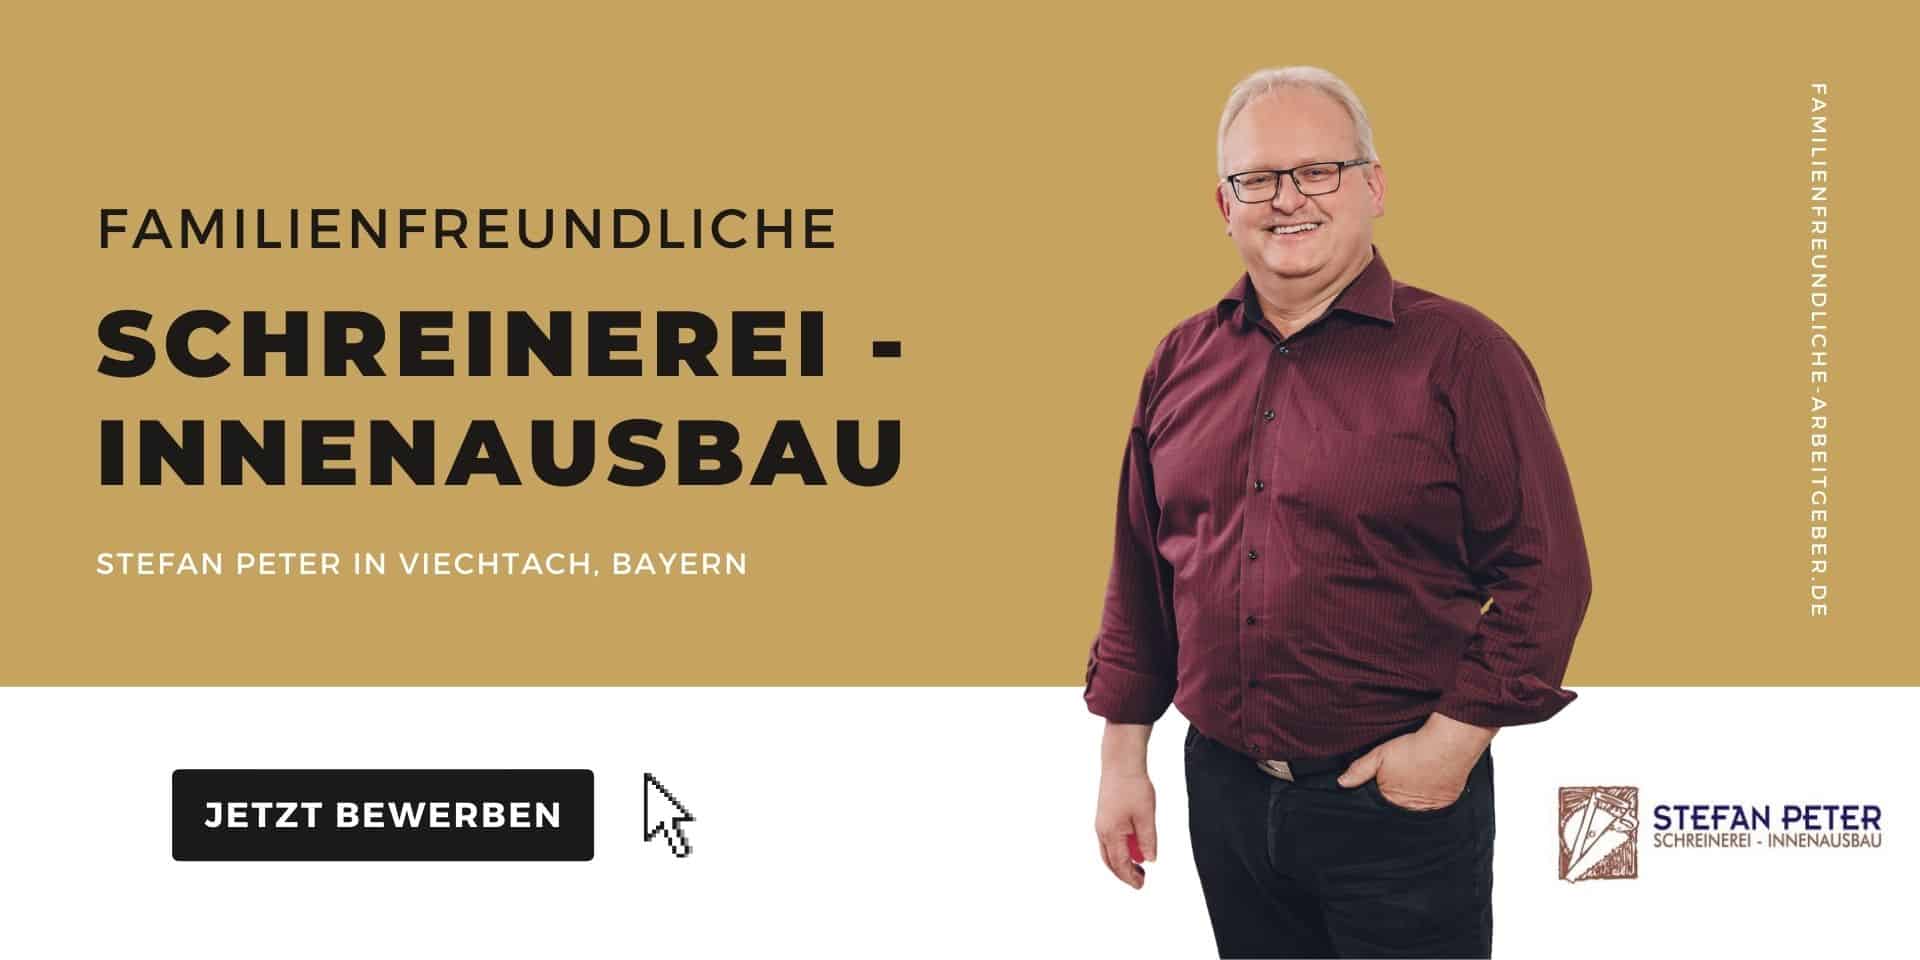 Familienfreundliche Schreinerei – Innenausbau Stefan Peter in Viechtach Bayern Jobs für Mütter und Väter familienfreundliche Unternehmen